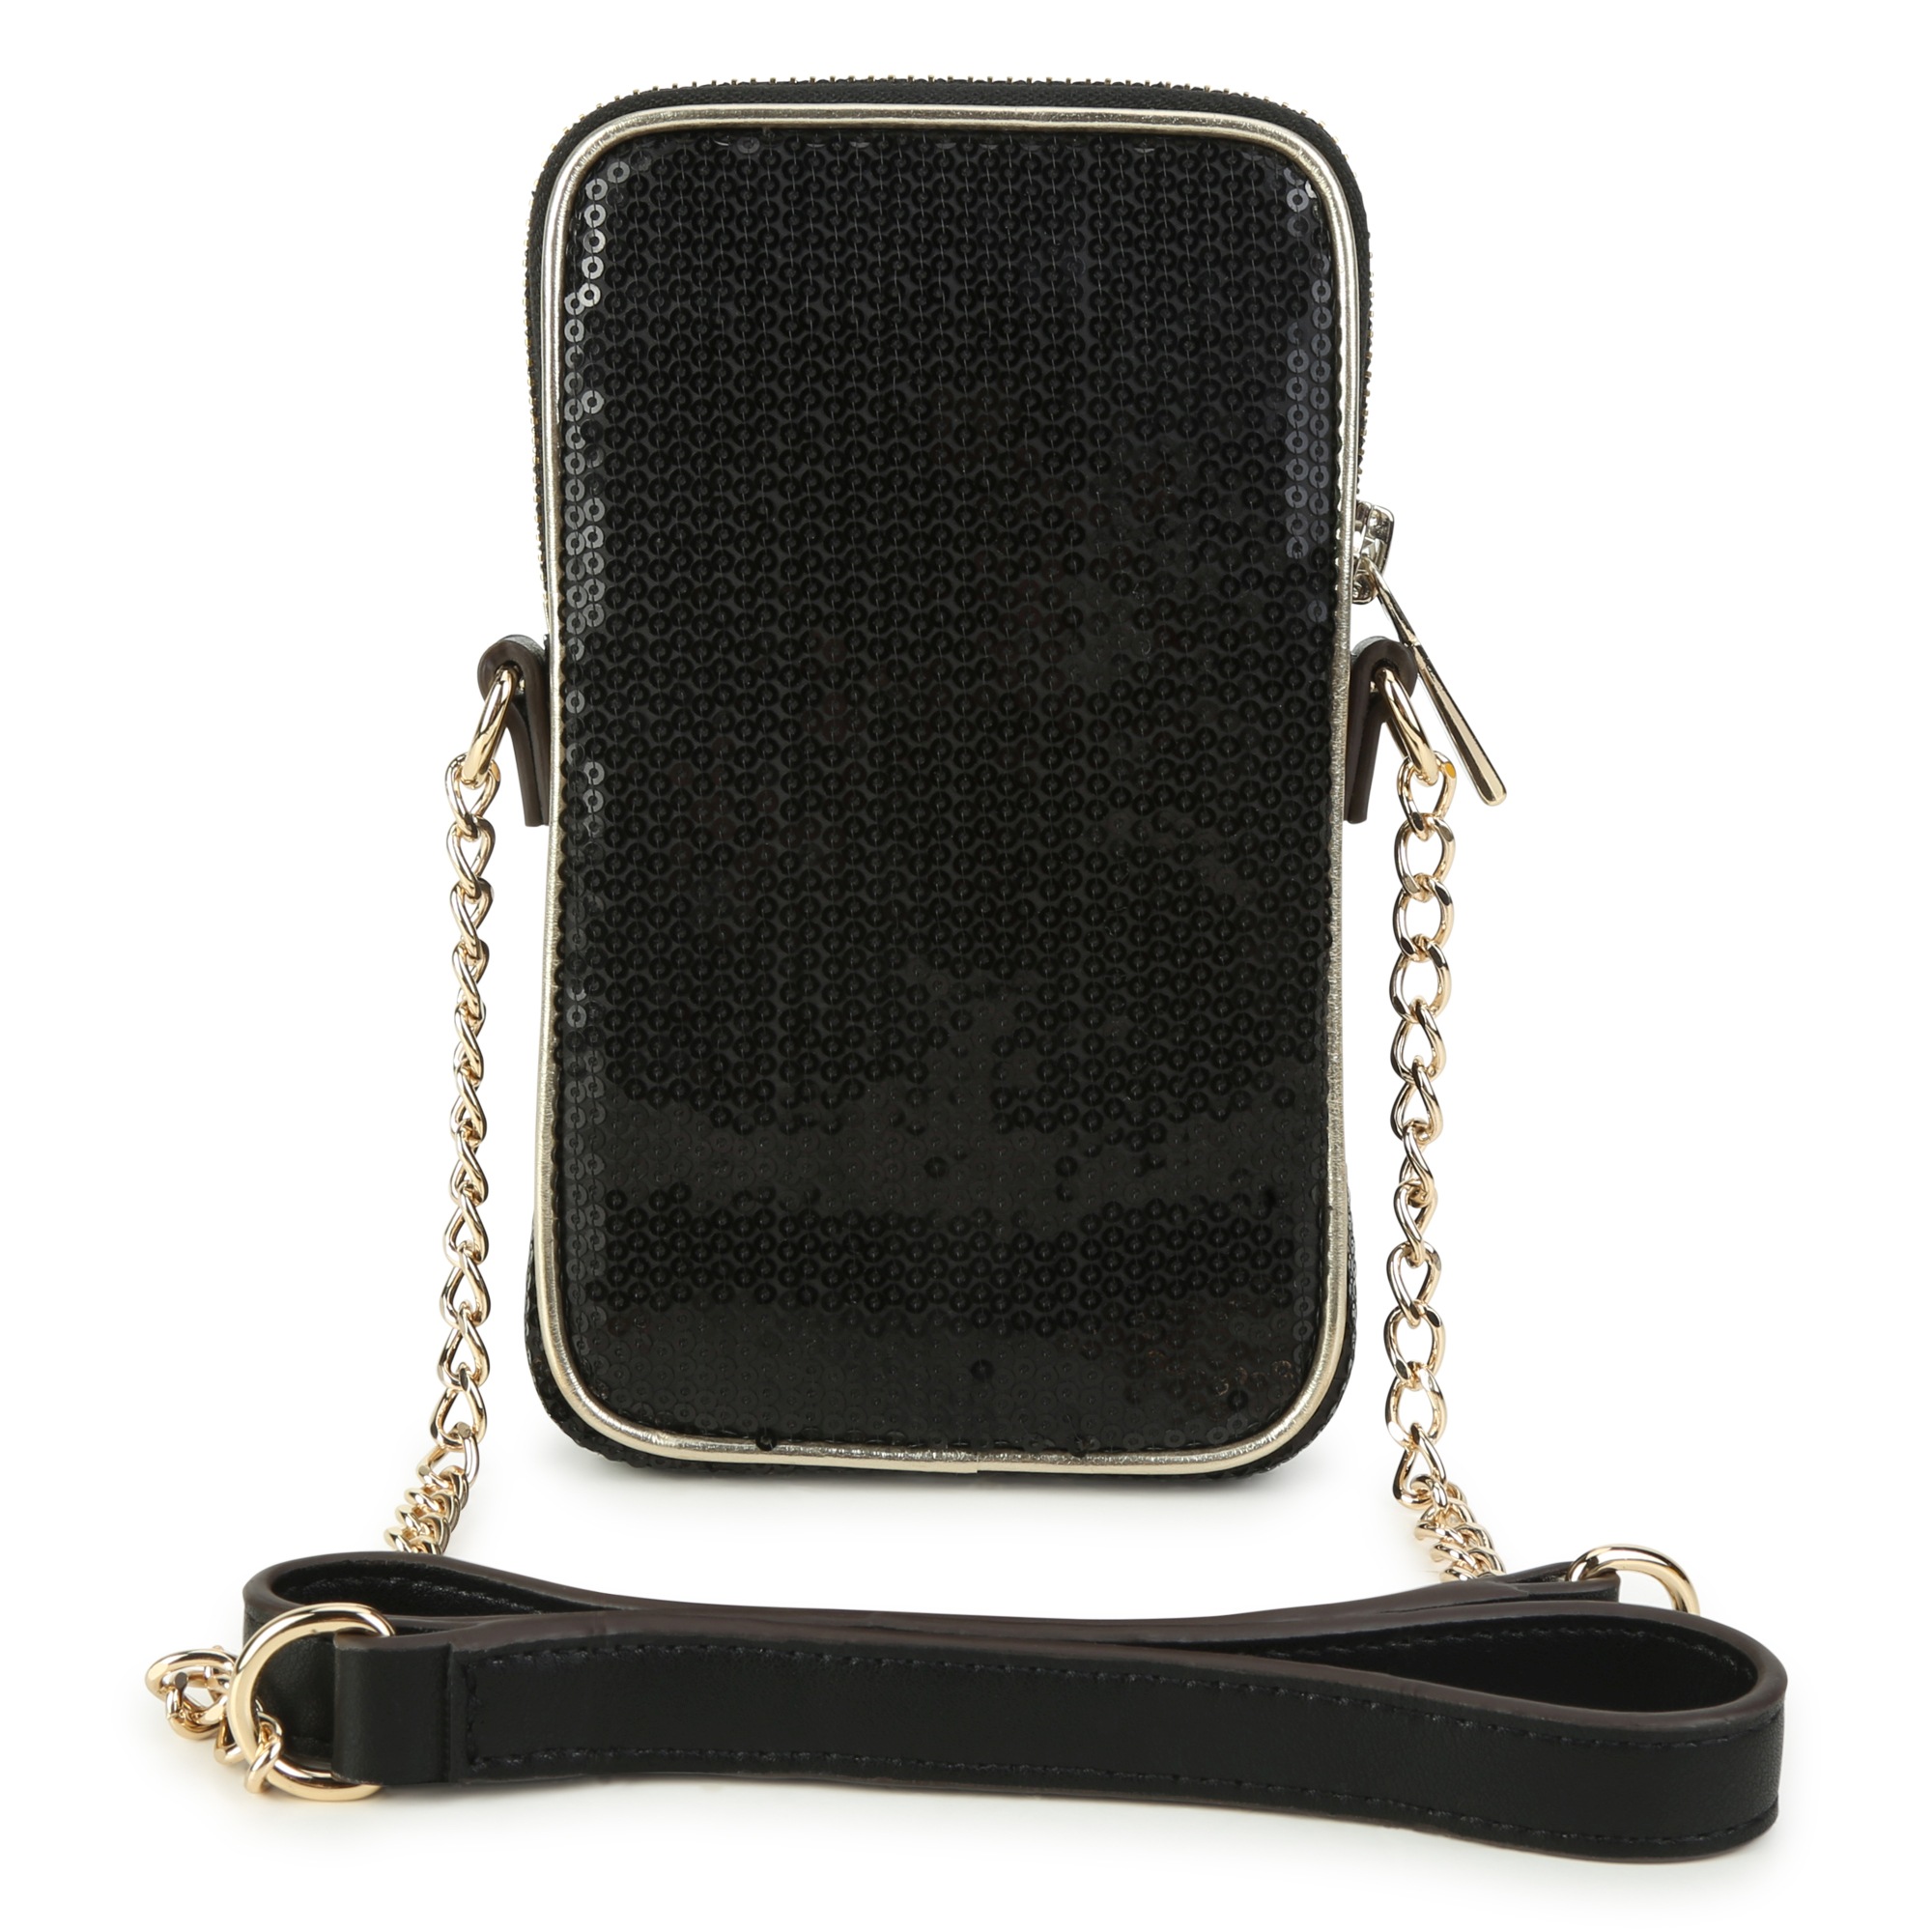 Sequin telephone crossbody bag MICHAEL KORS for GIRL